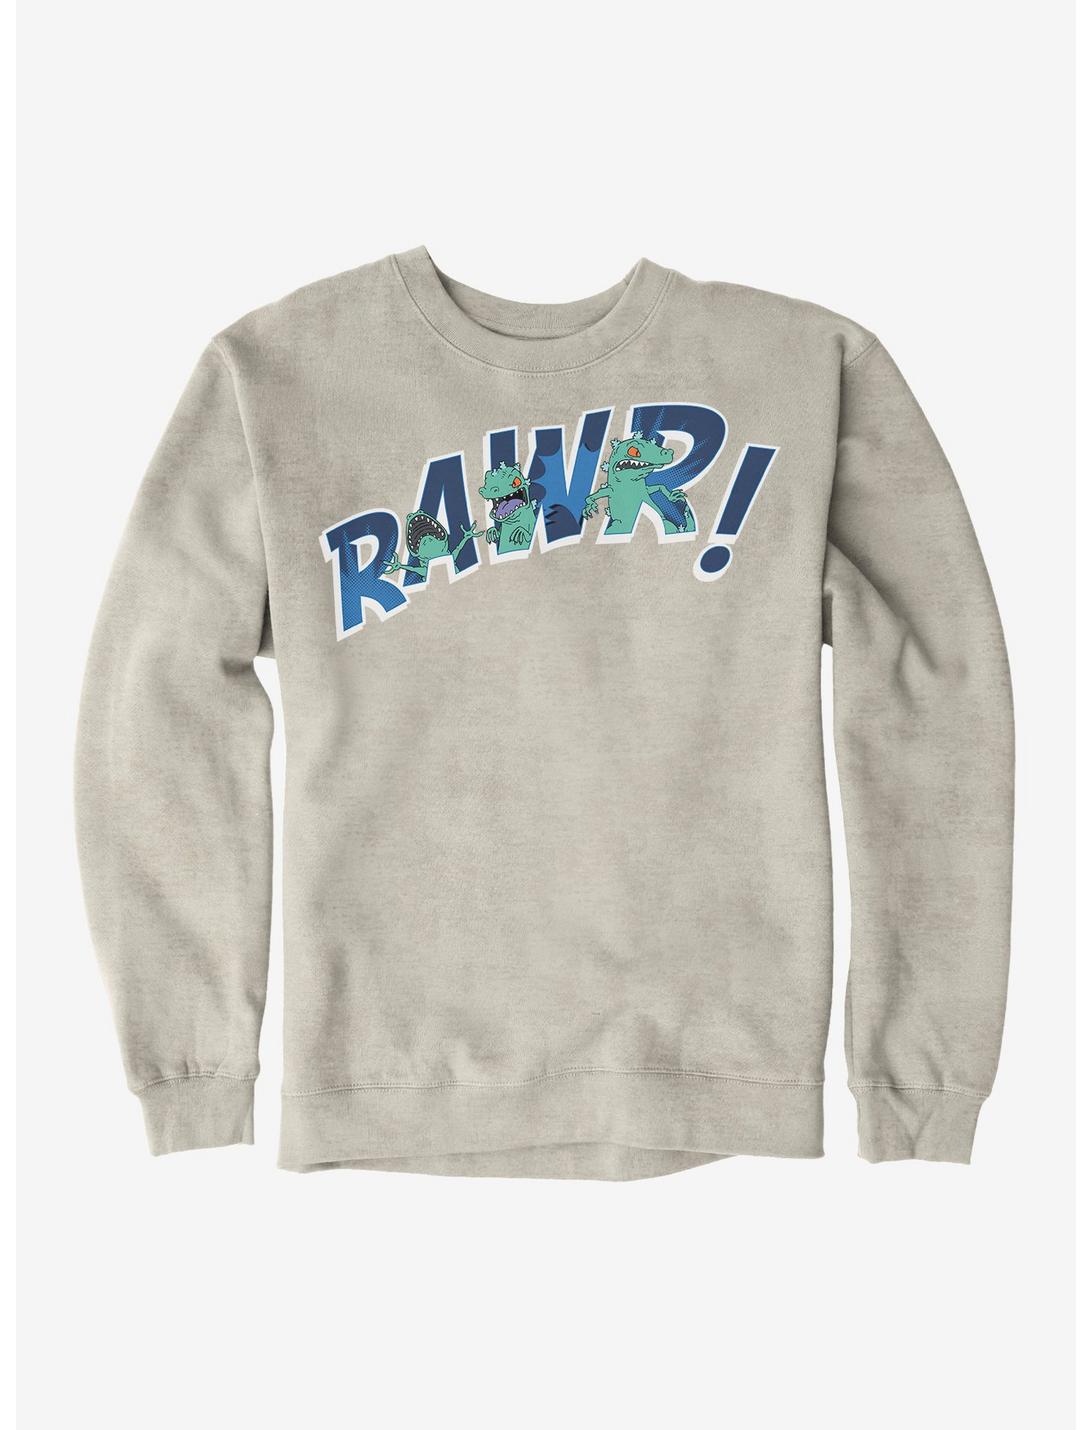 Rugrats Reptar Rawr! Sweatshirt, OATMEAL HEATHER, hi-res